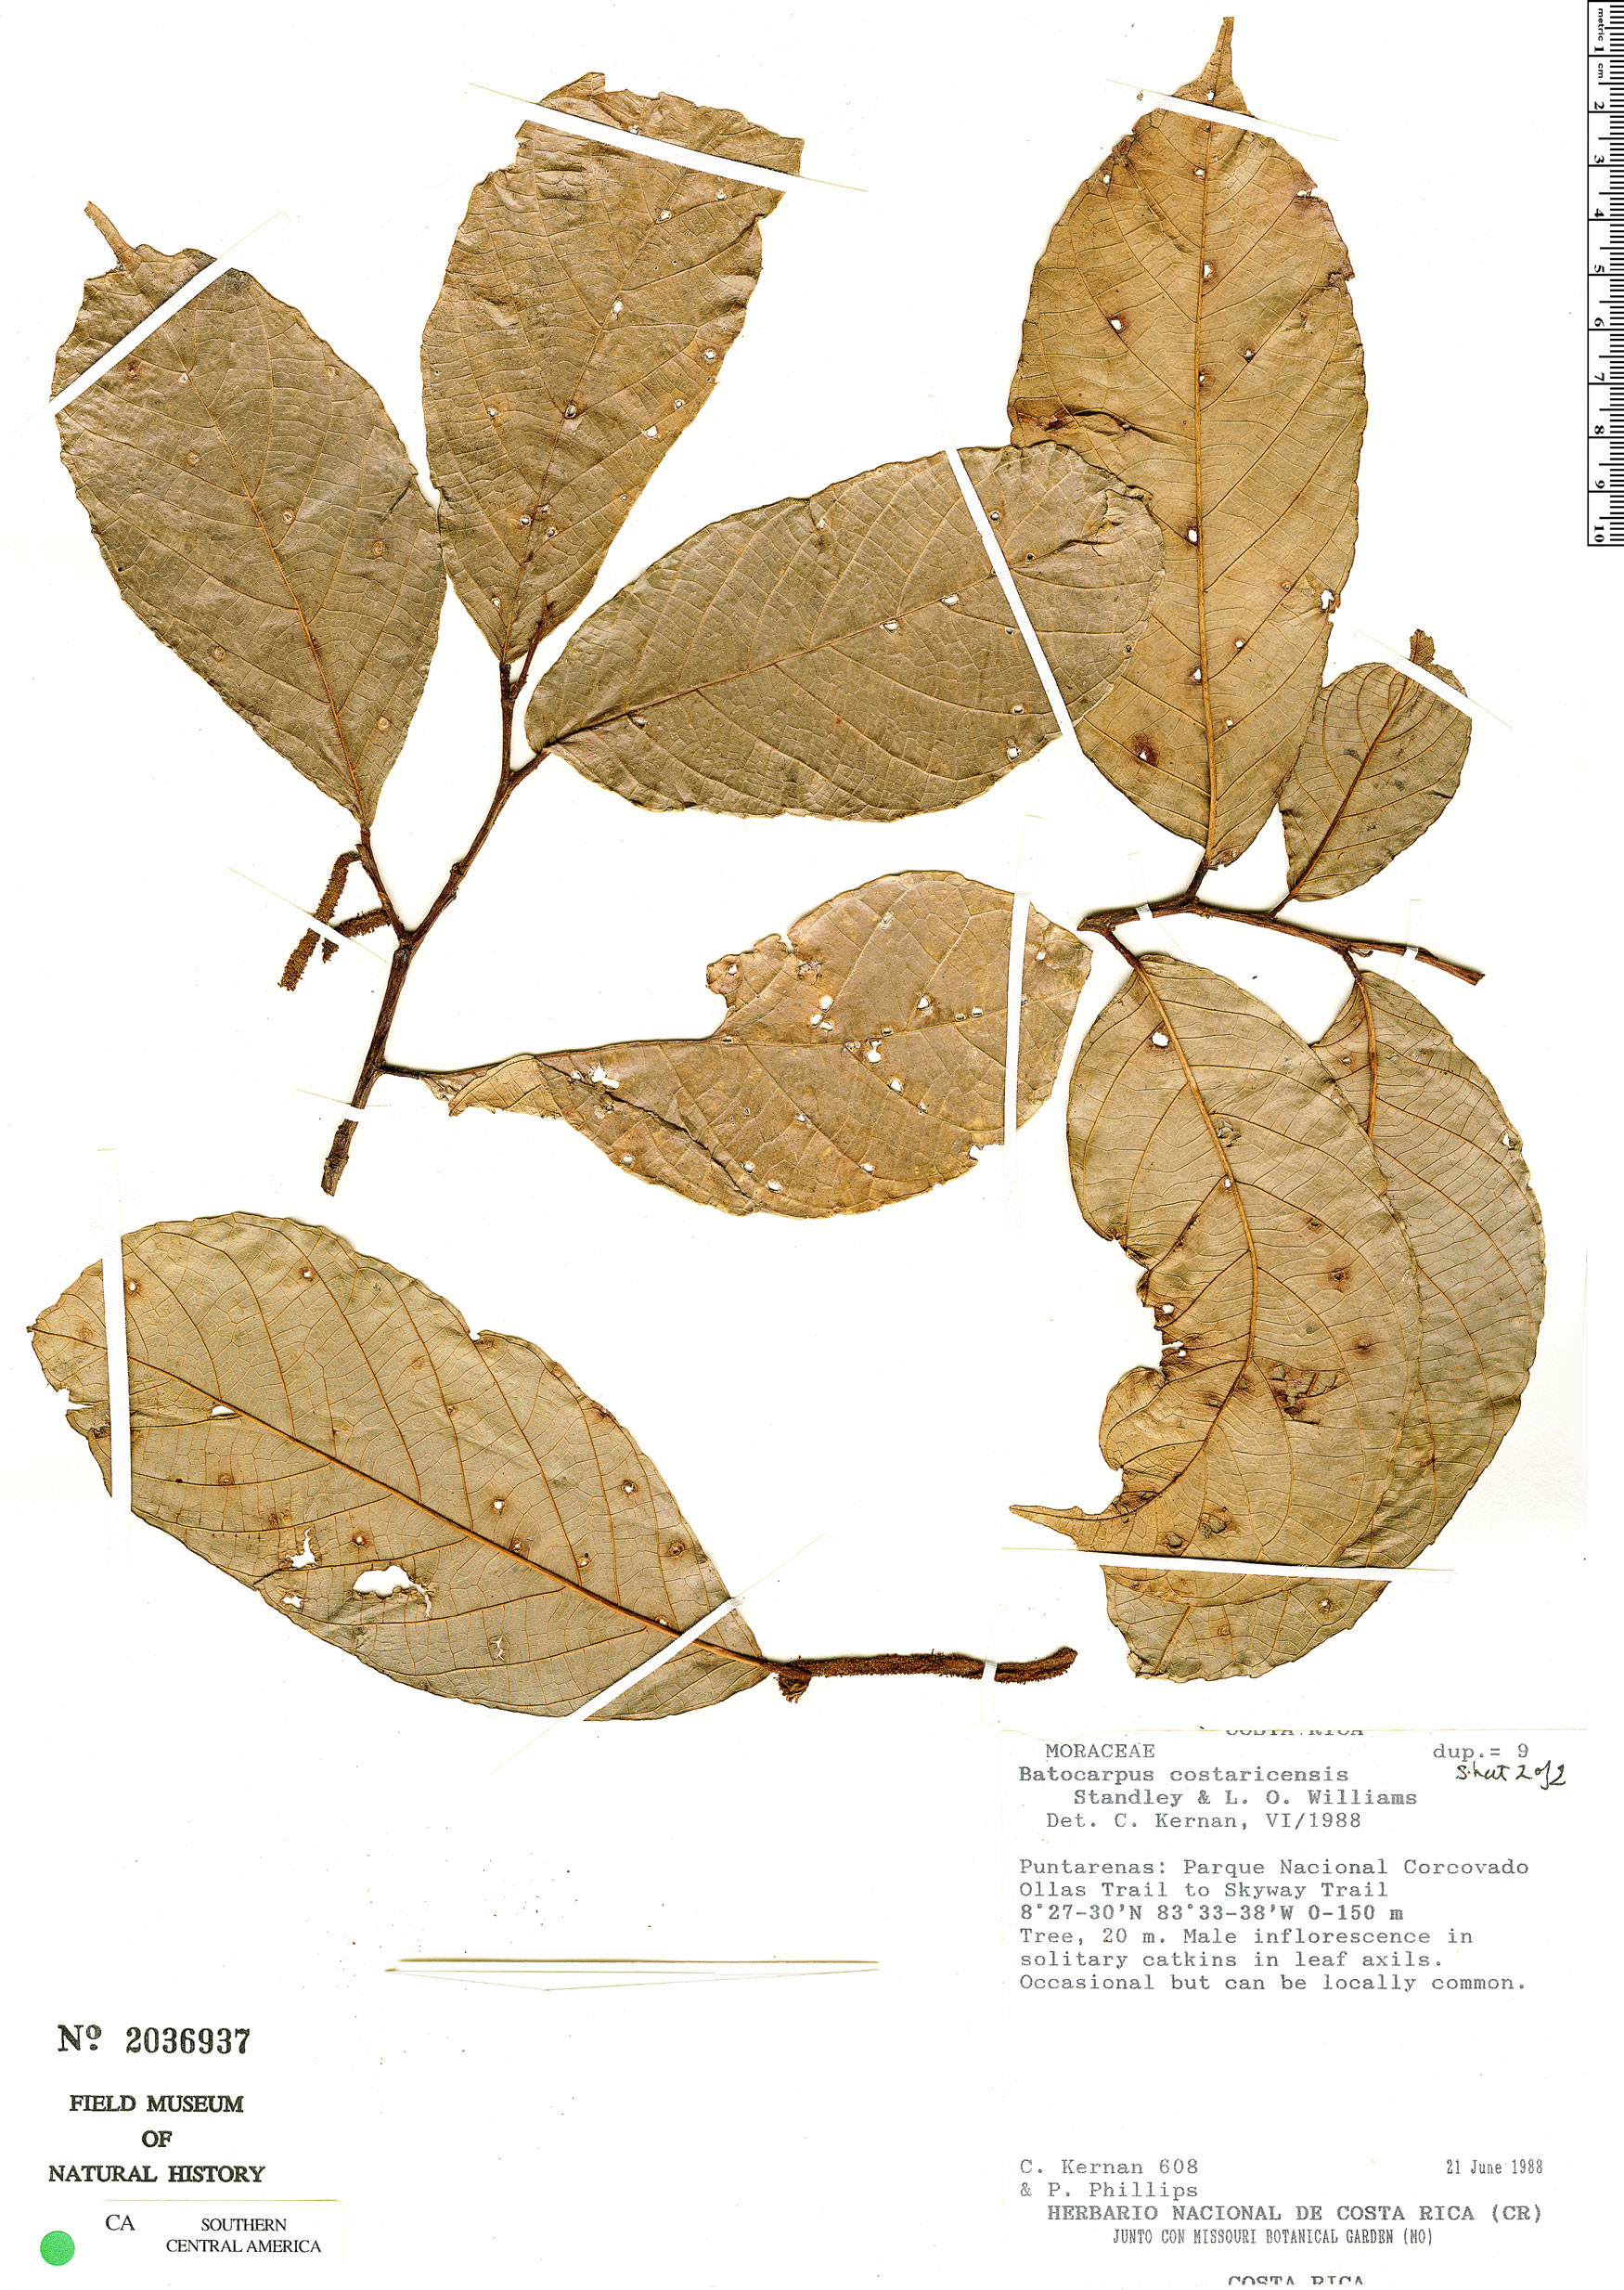 Batocarpus image